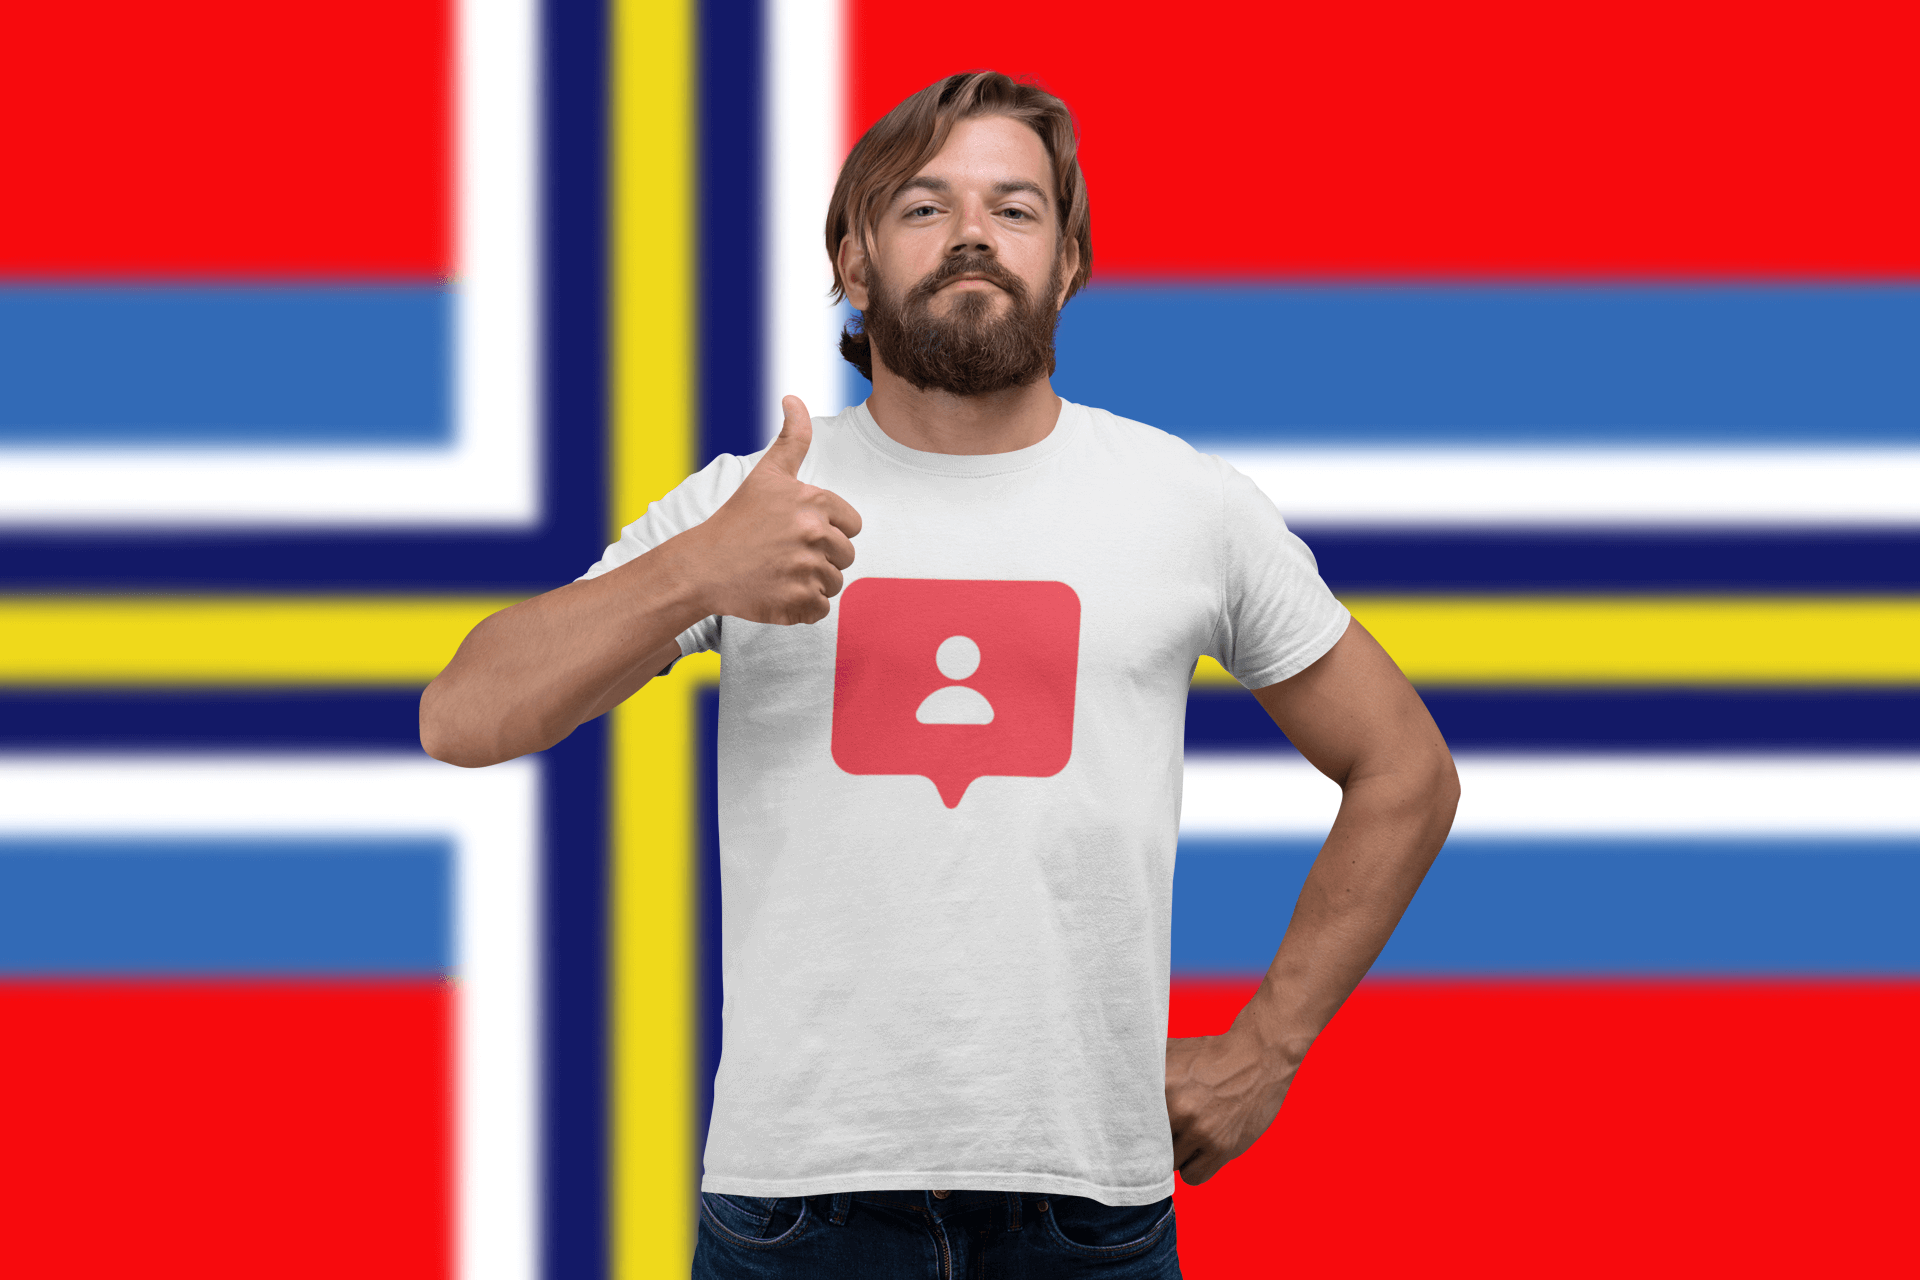 buy Scandinavian instagram followers premium